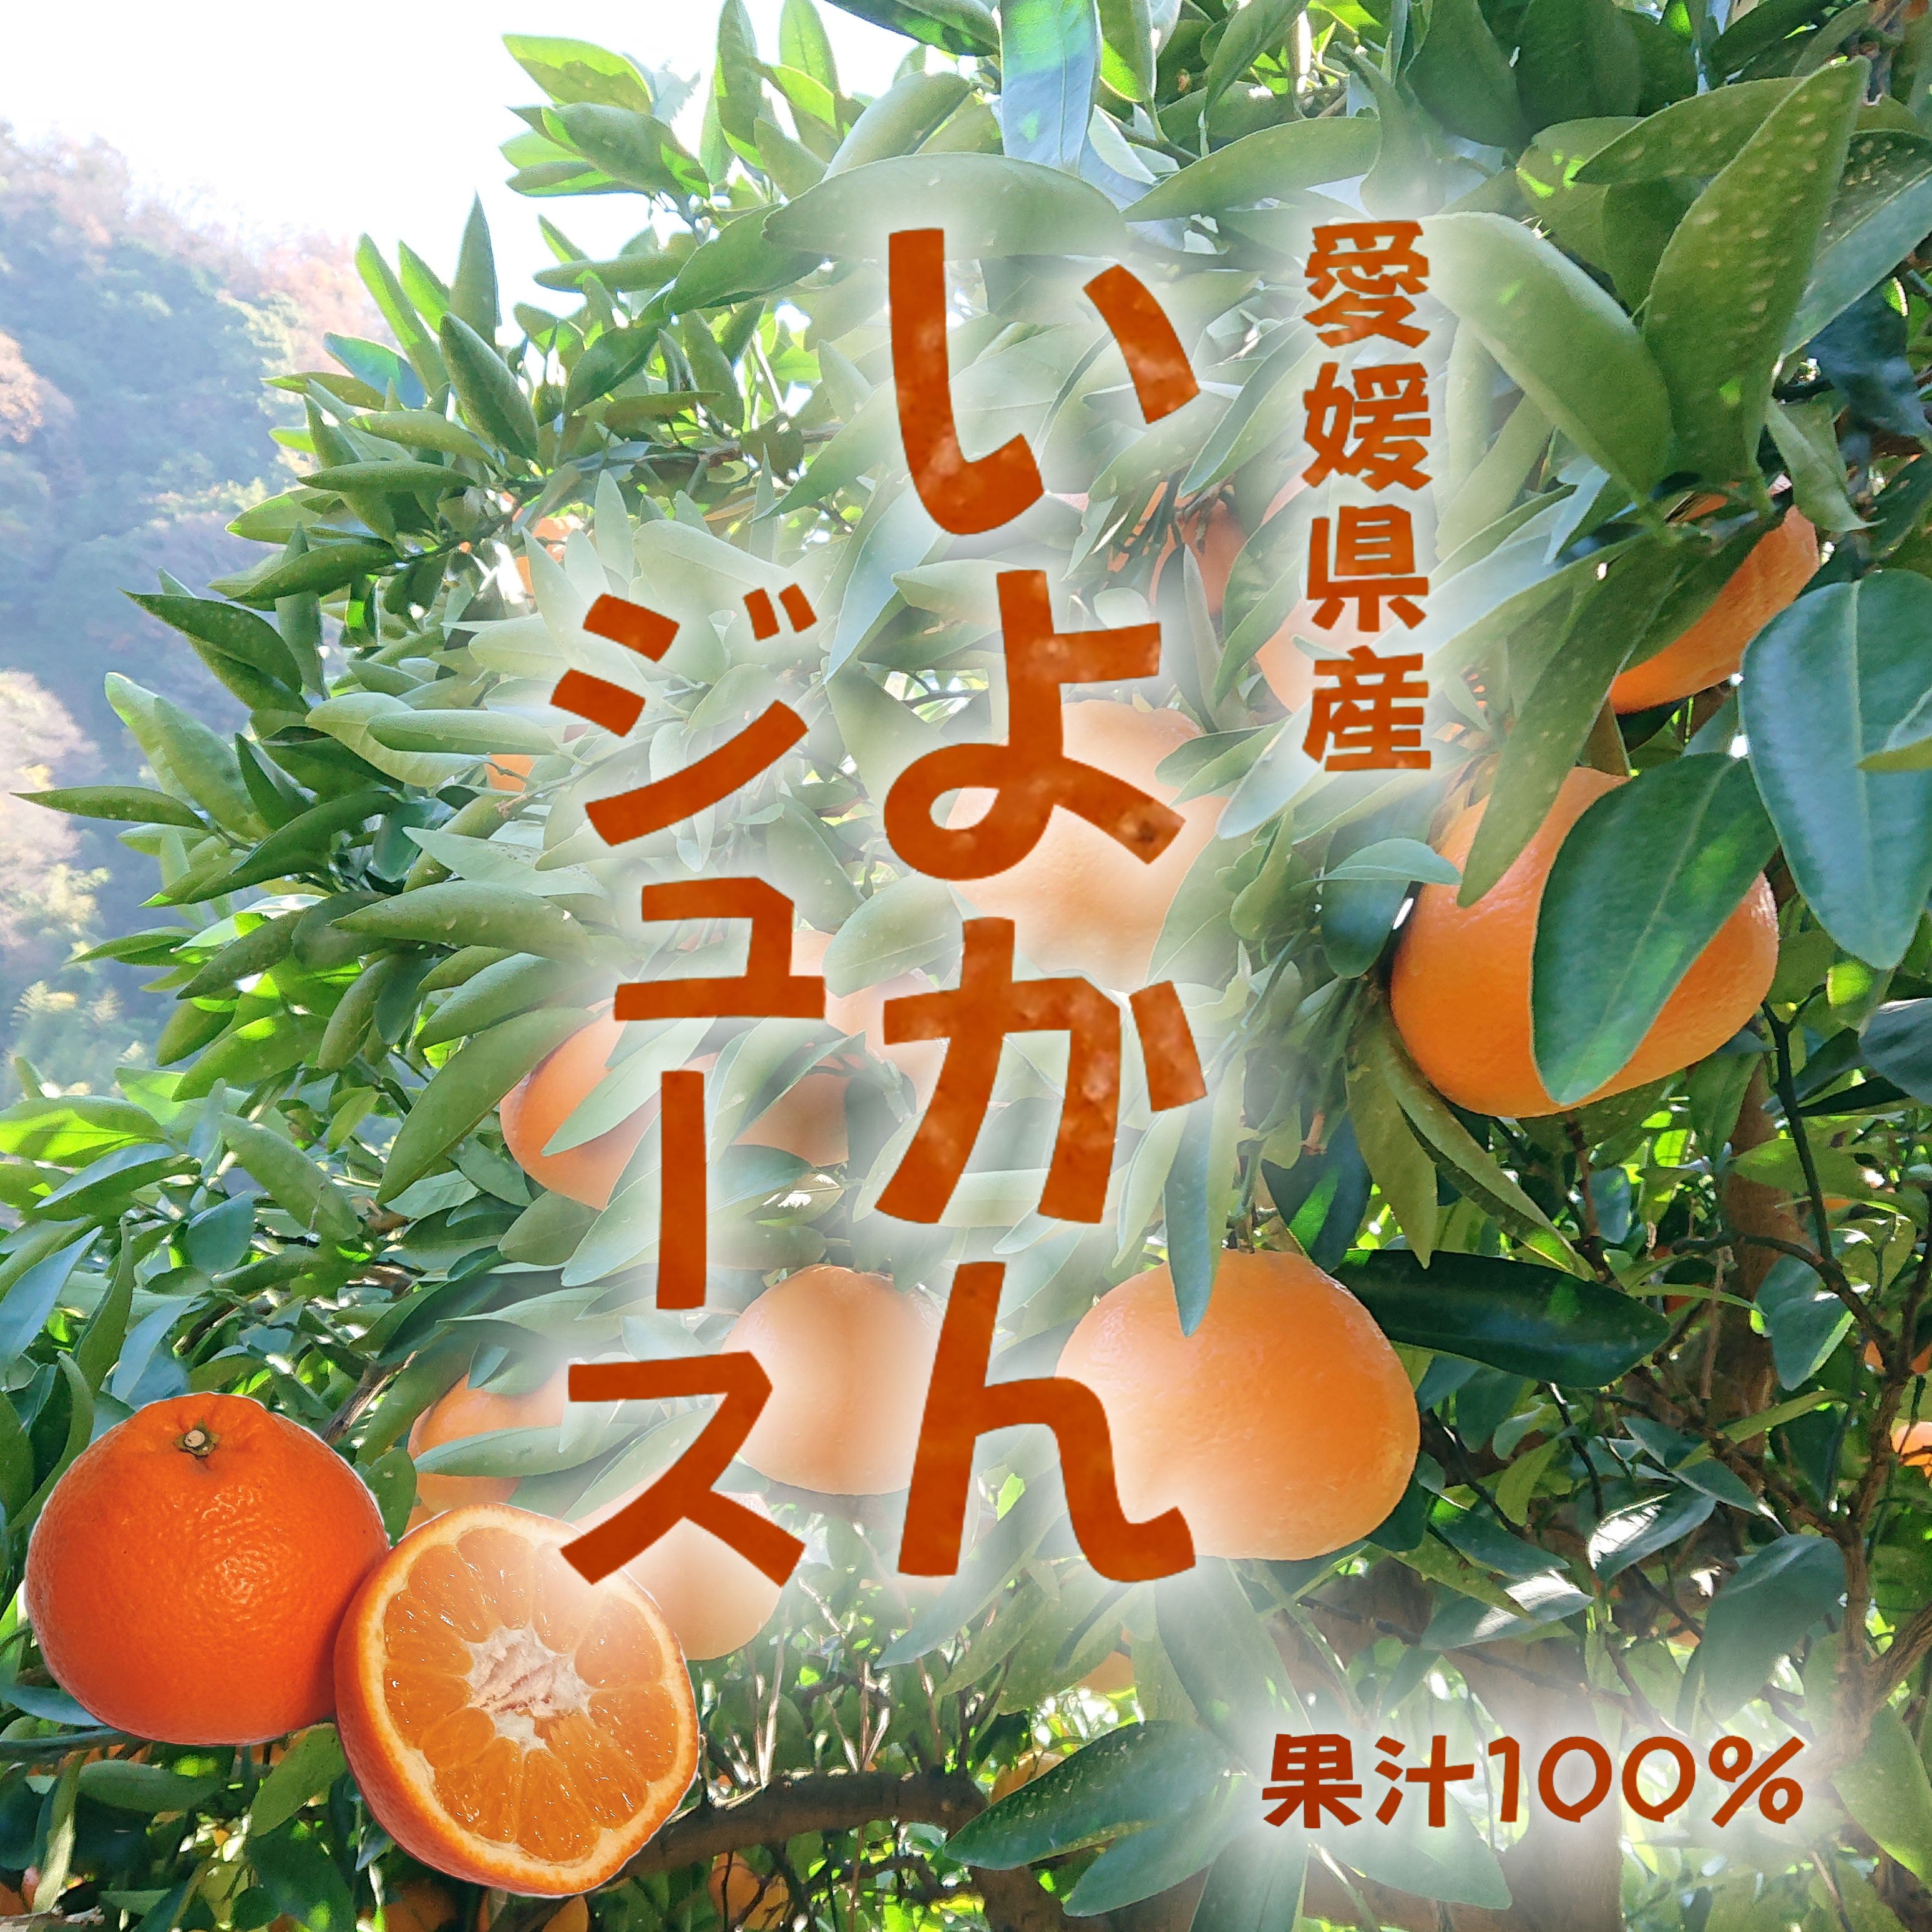 ふるさと納税 愛南町 吉田農園の愛媛みかん 約5kg - みかん、柑橘類